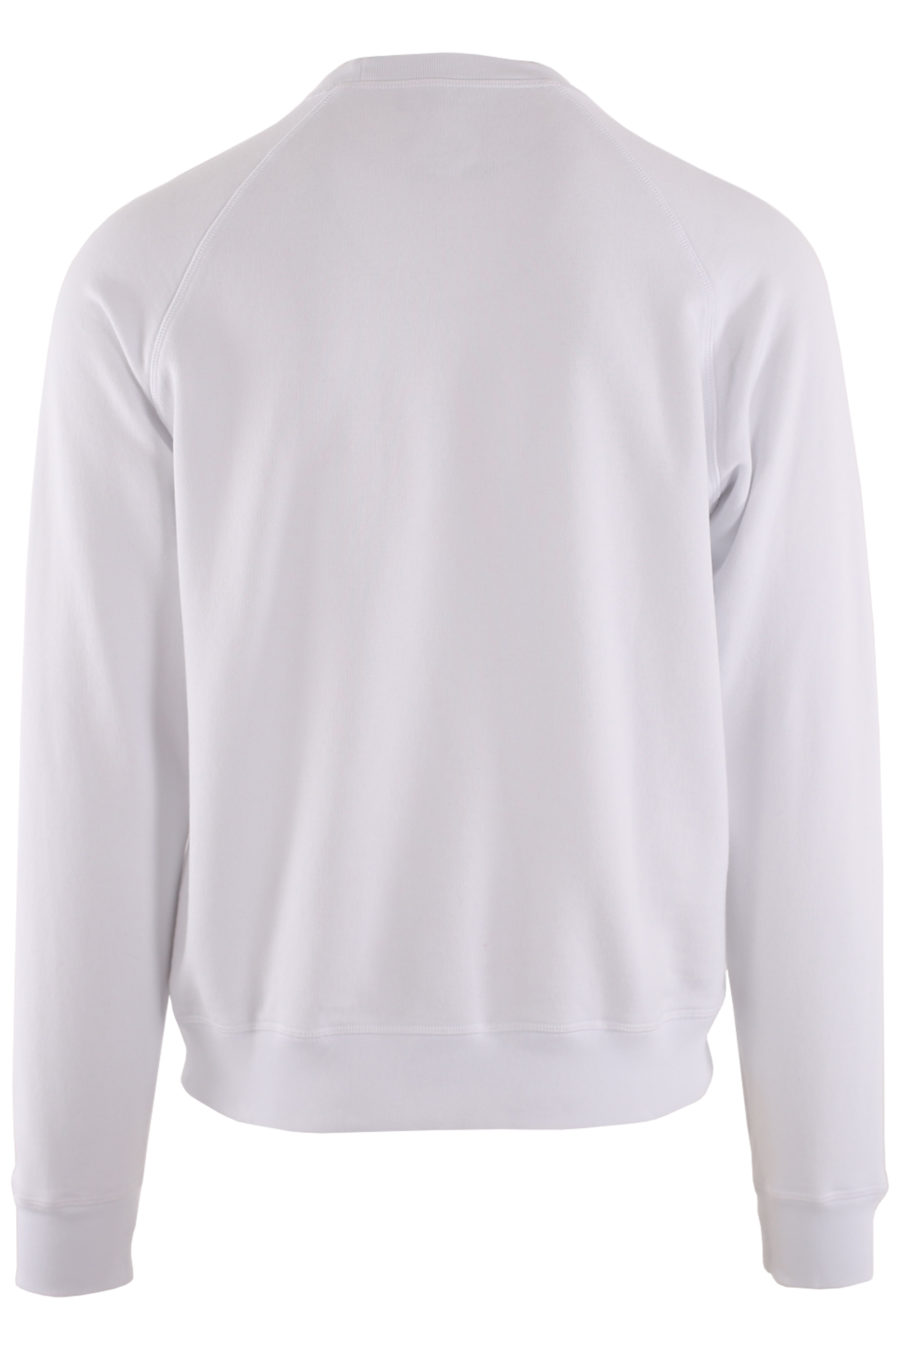 Weißes Sweatshirt mit schwarzem Logo in der Mitte - IMG 8721